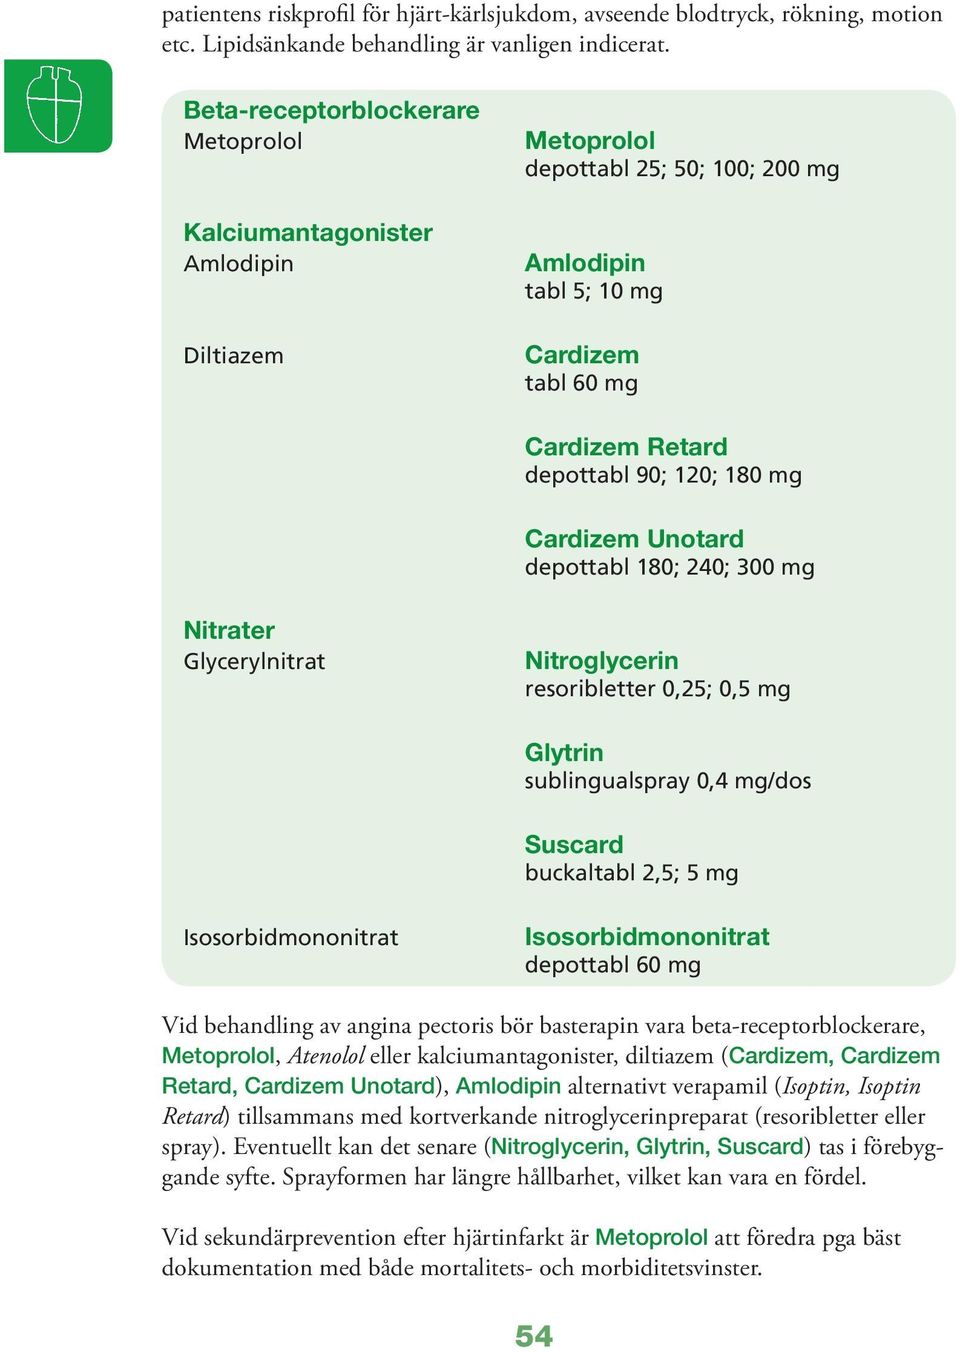 mg Cardizem Unotard depottabl 180; 240; 300 mg Nitrater Glycerylnitrat Nitroglycerin resoribletter 0,25; 0,5 mg Glytrin sublingualspray 0,4 mg/dos Suscard buckaltabl 2,5; 5 mg Isosorbidmononitrat